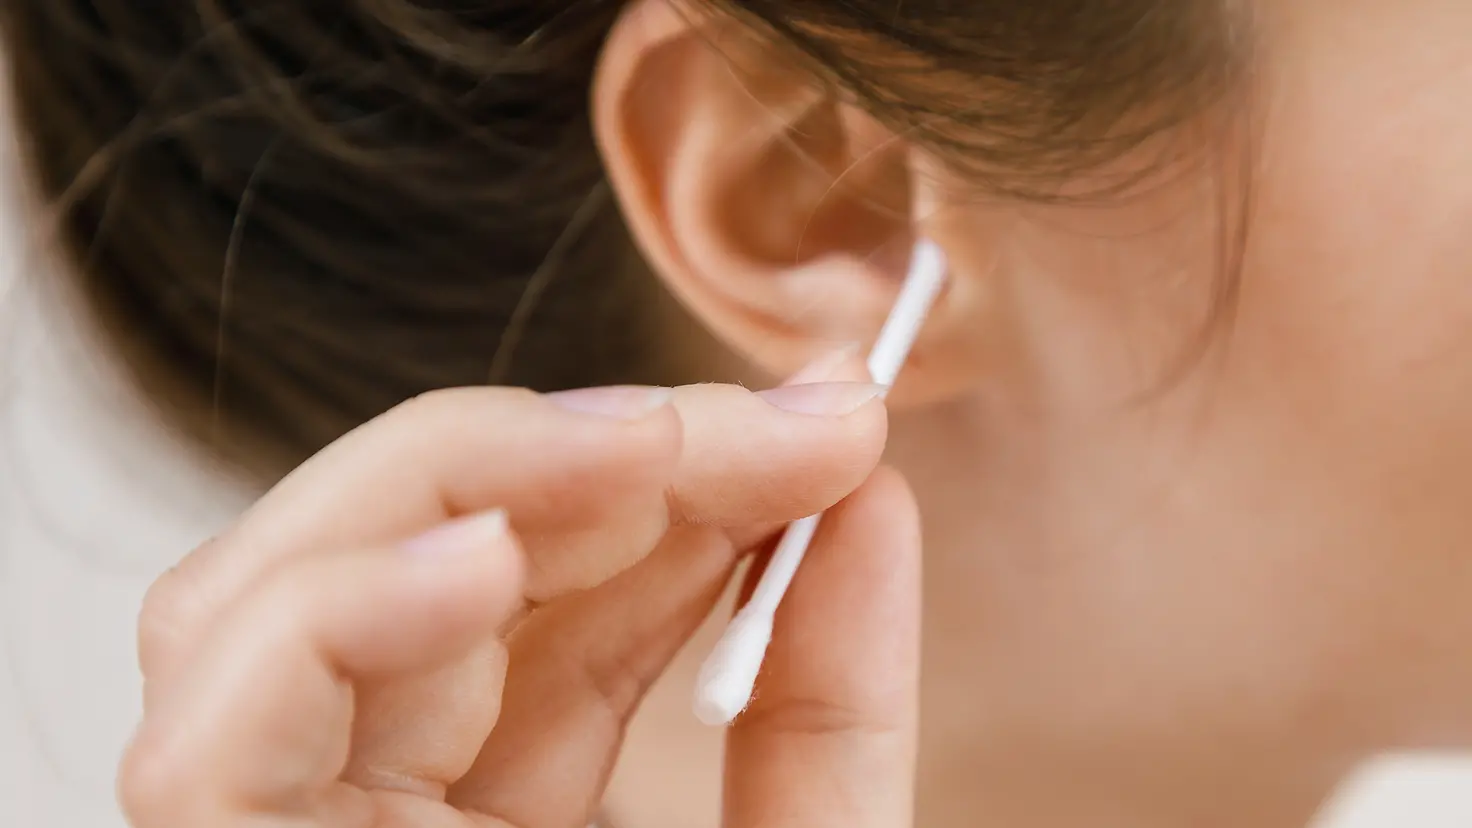 Rechtes Ohr einer jungen Frau, die mit einem Wattestäbchen versucht, ihr Ohr zu reinigen.